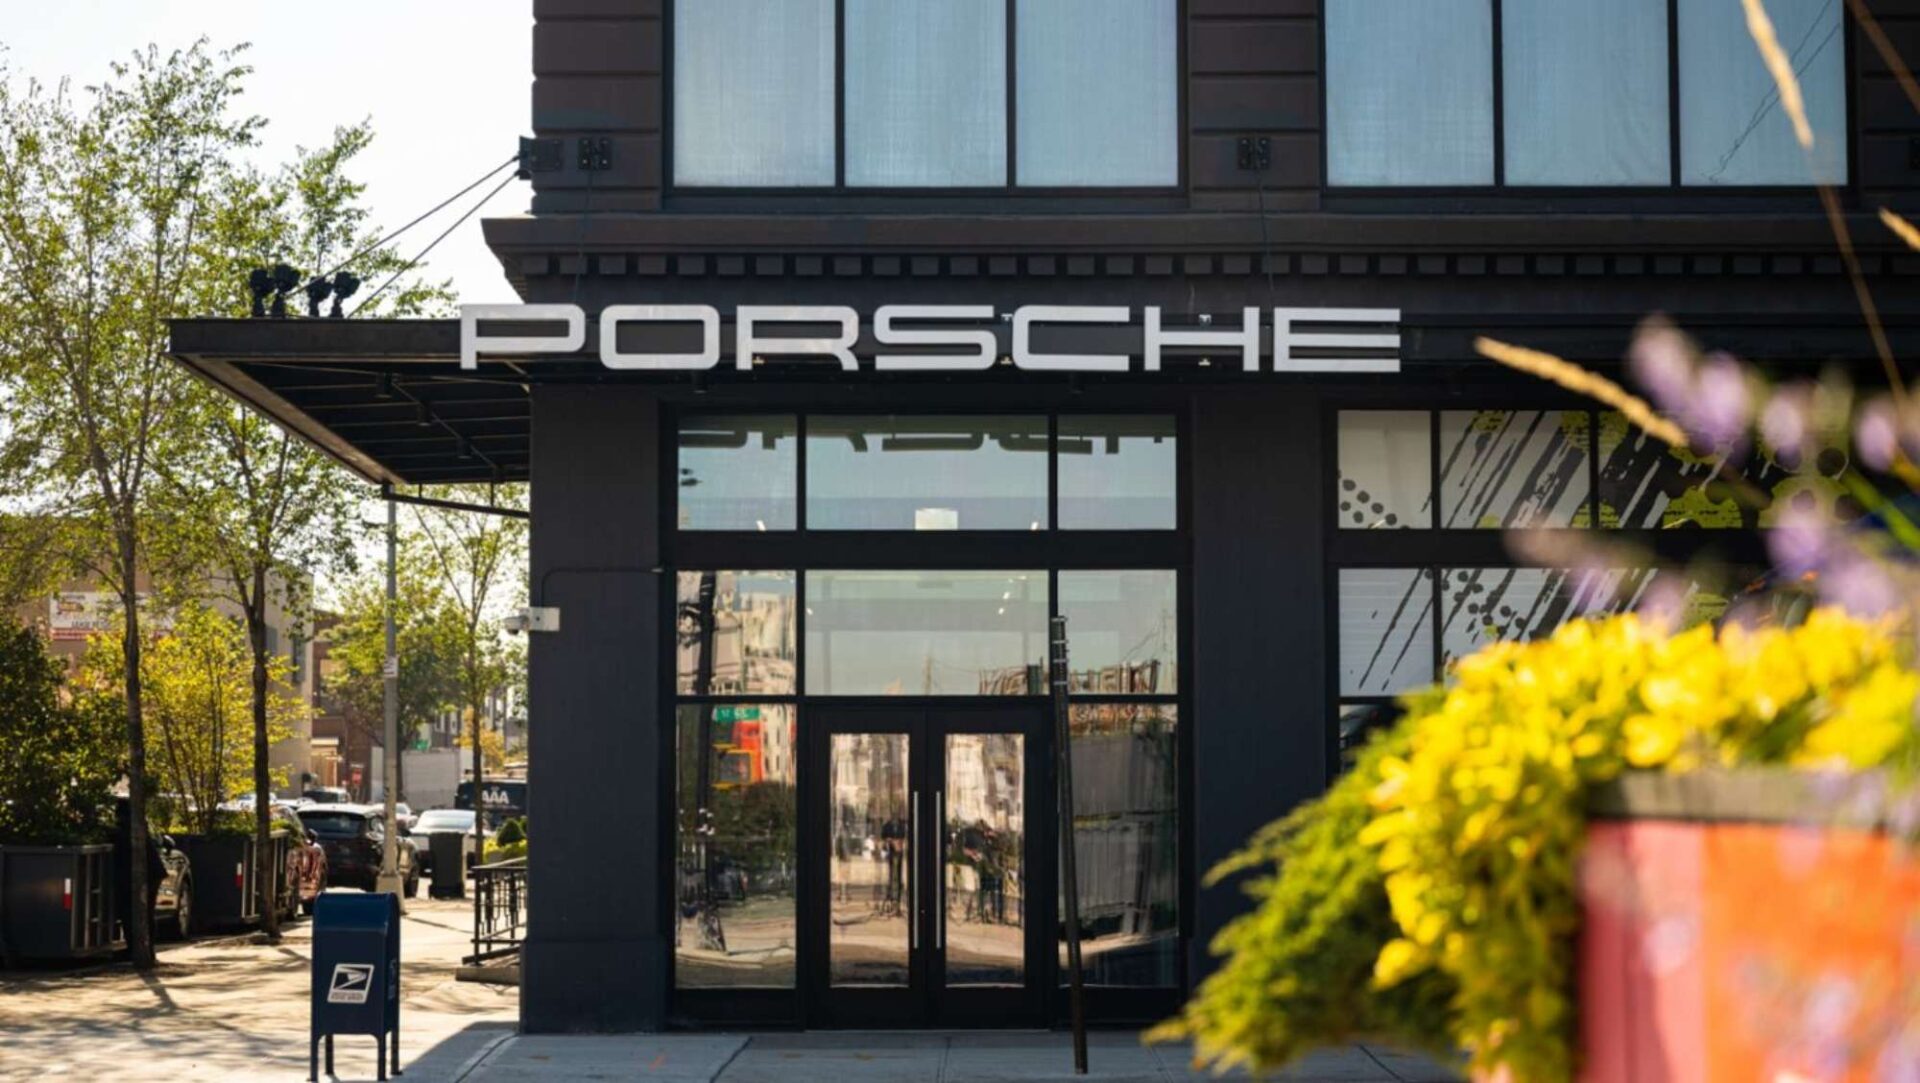 The exterior of a Porsche dealership.